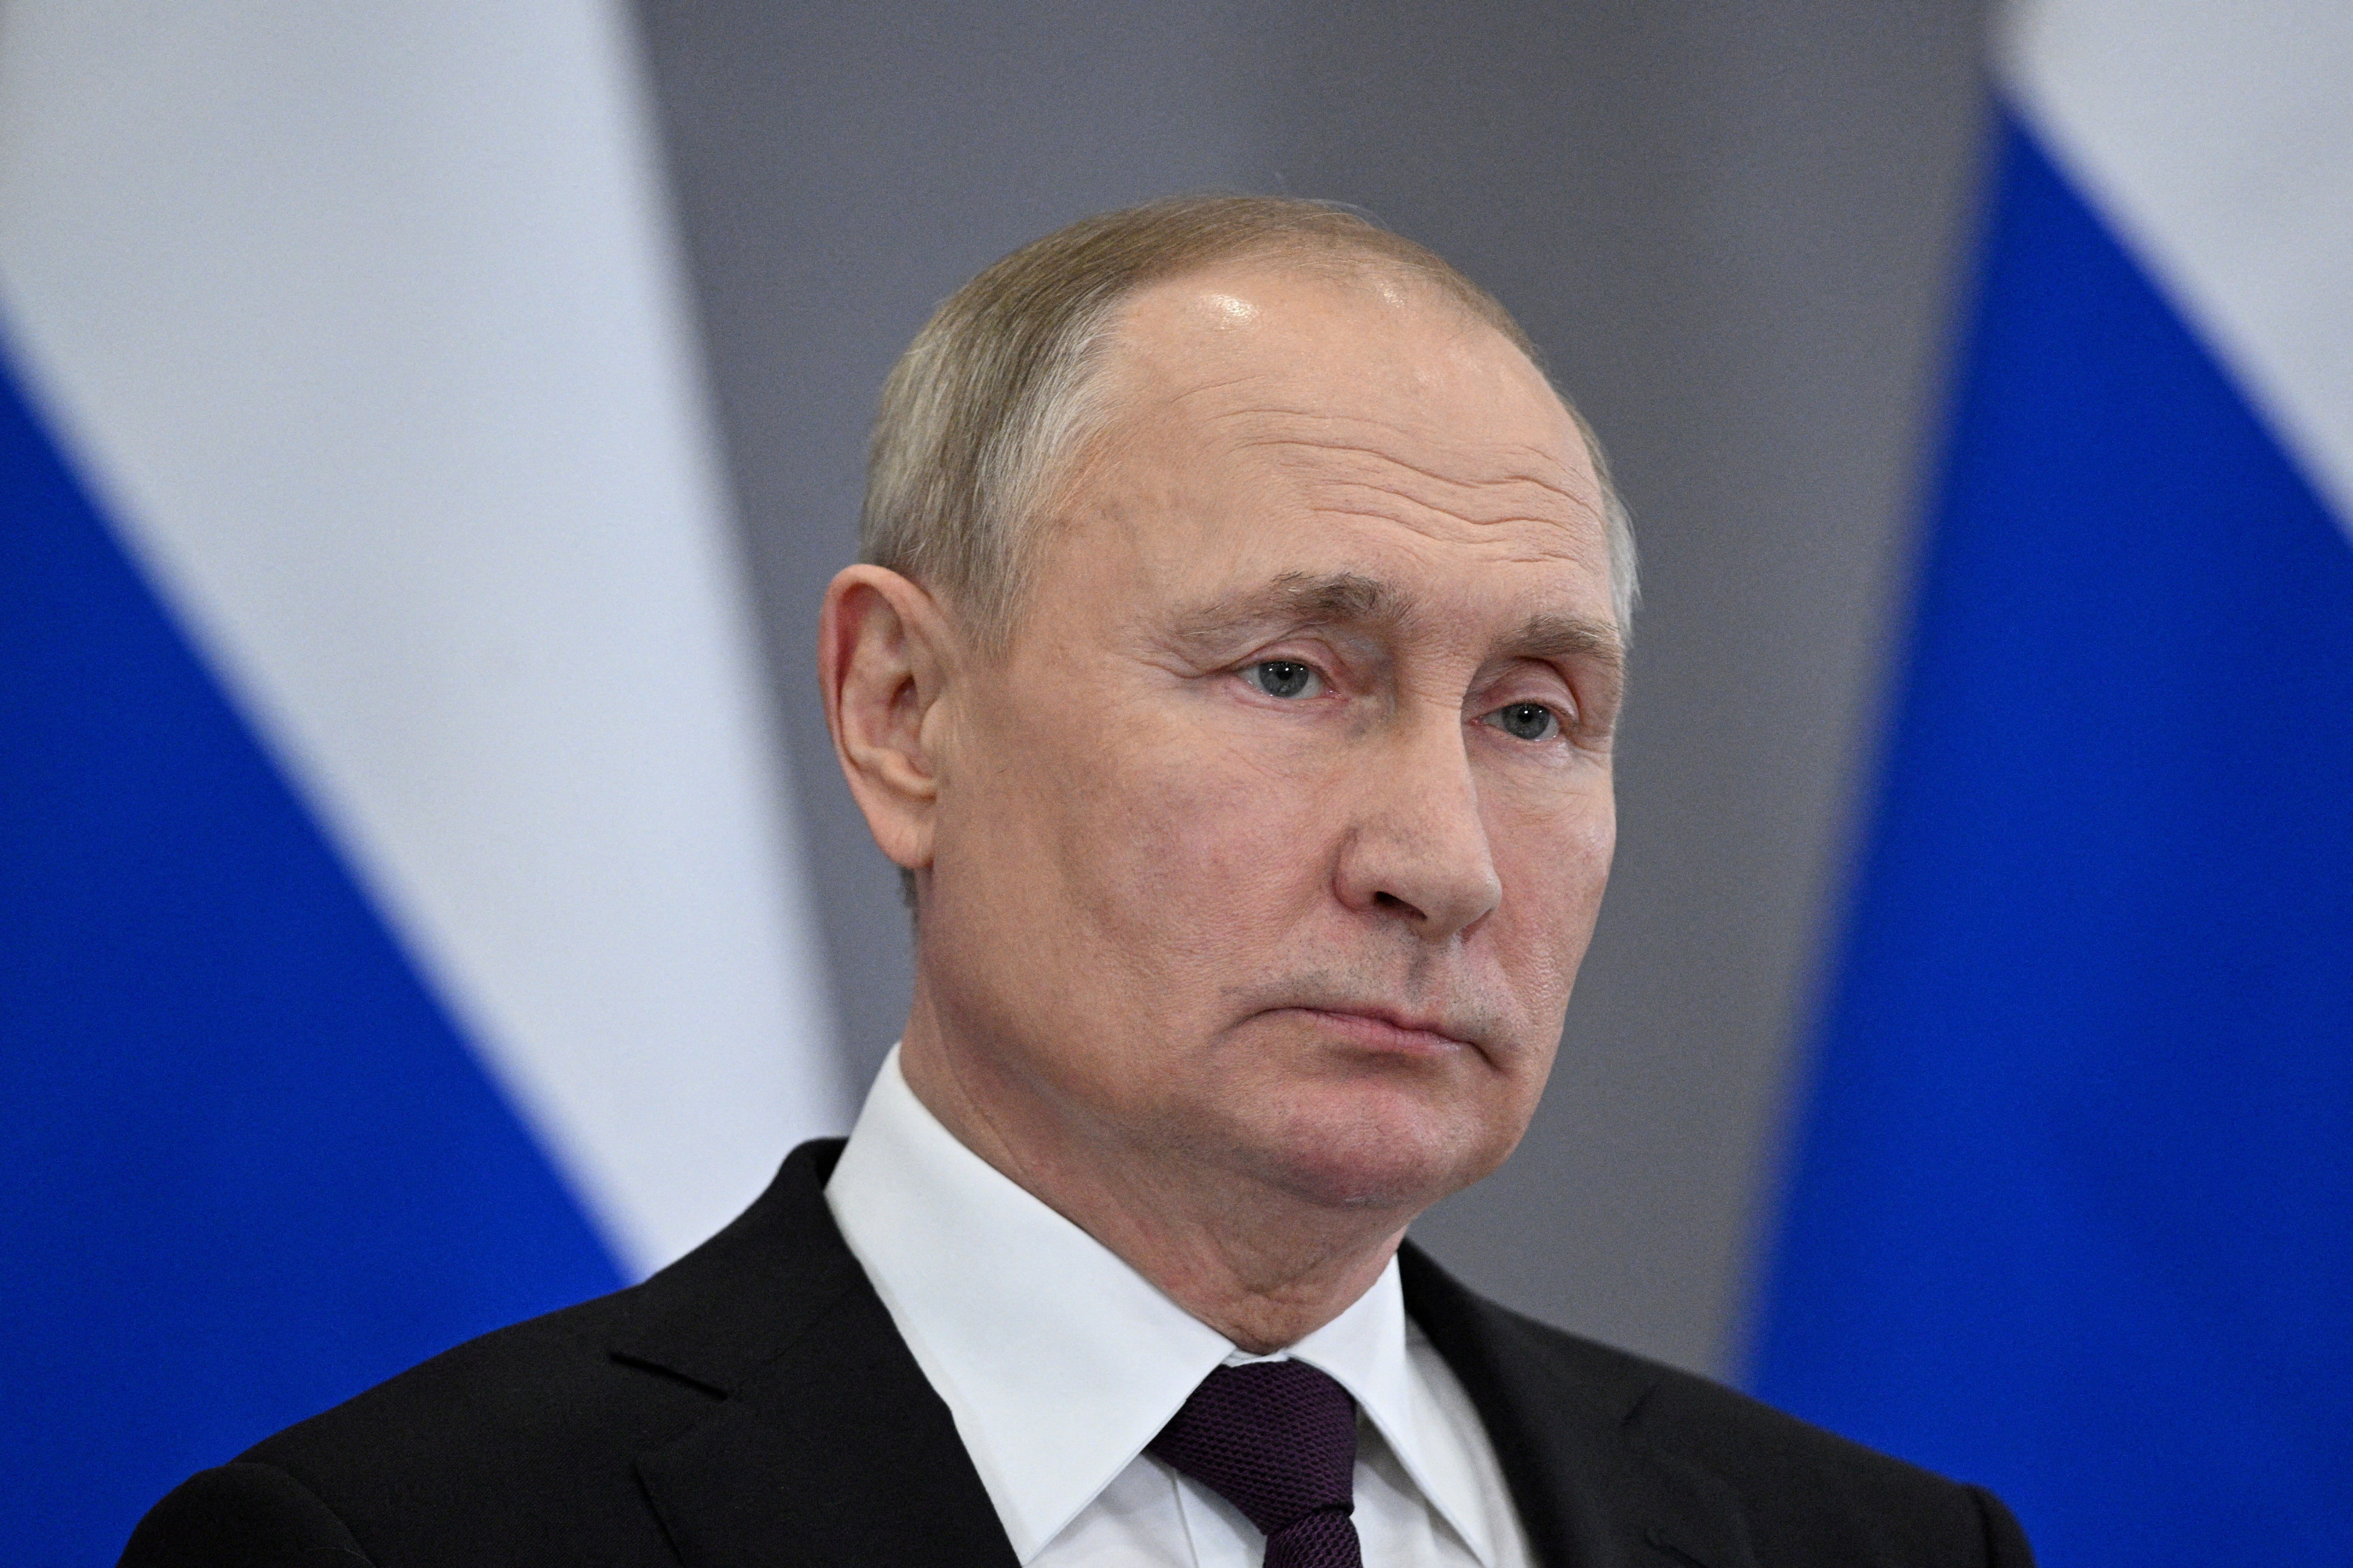 Russie: le prix de la vodka abaissé par un décret de Poutine